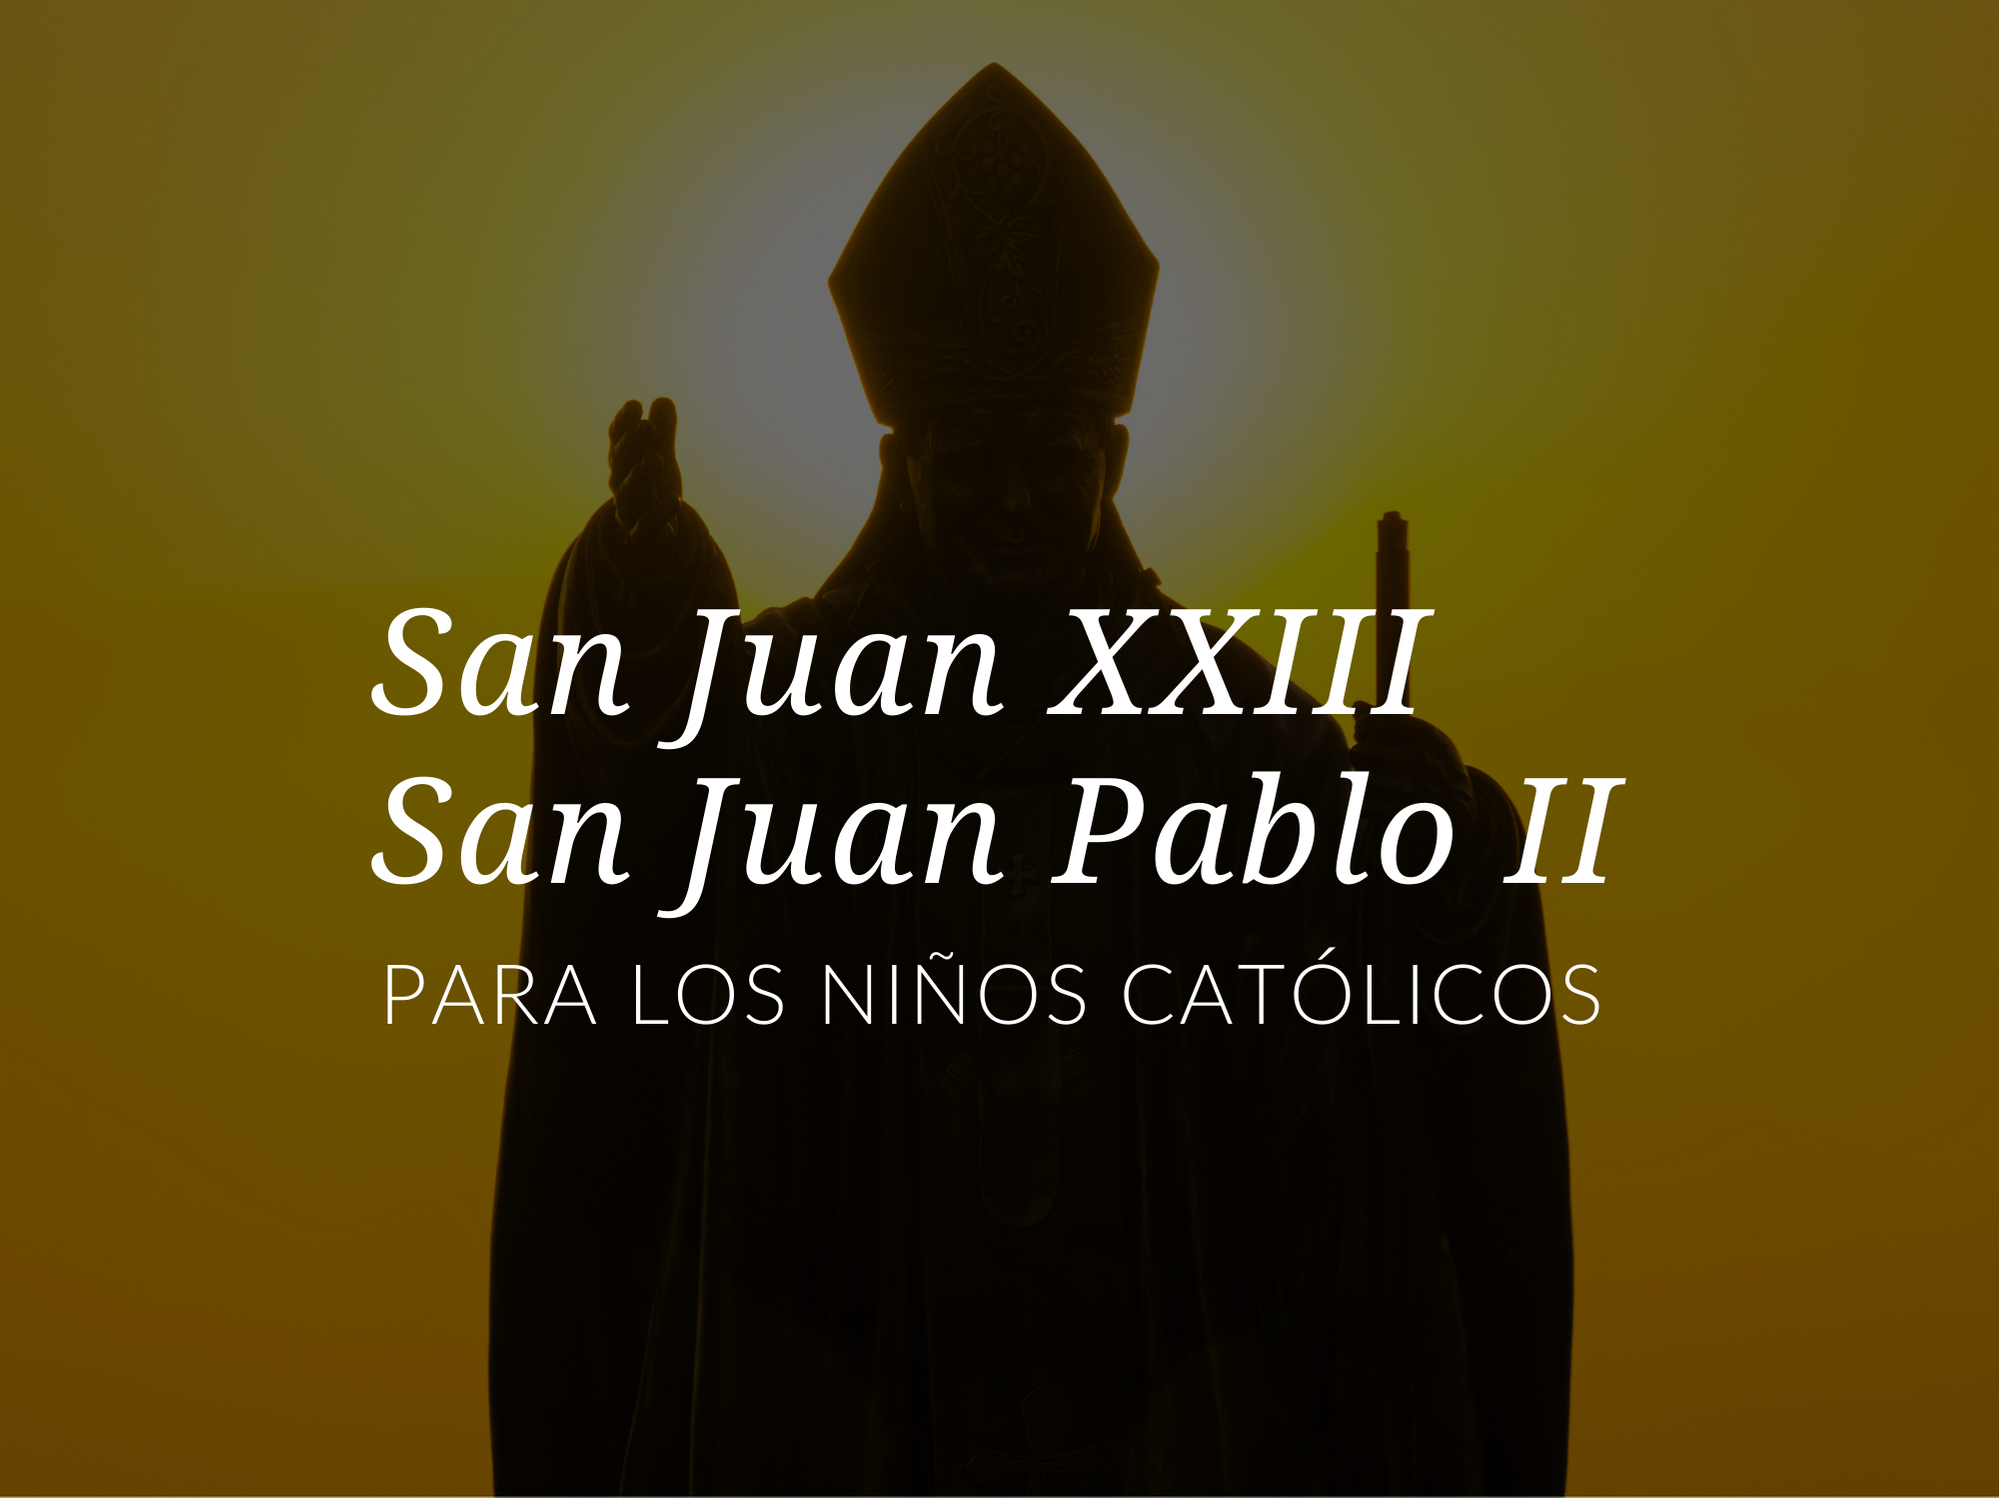 Santos-populares-para-ninos-San-Juan-XXIII-San-Juan-Pablo-II